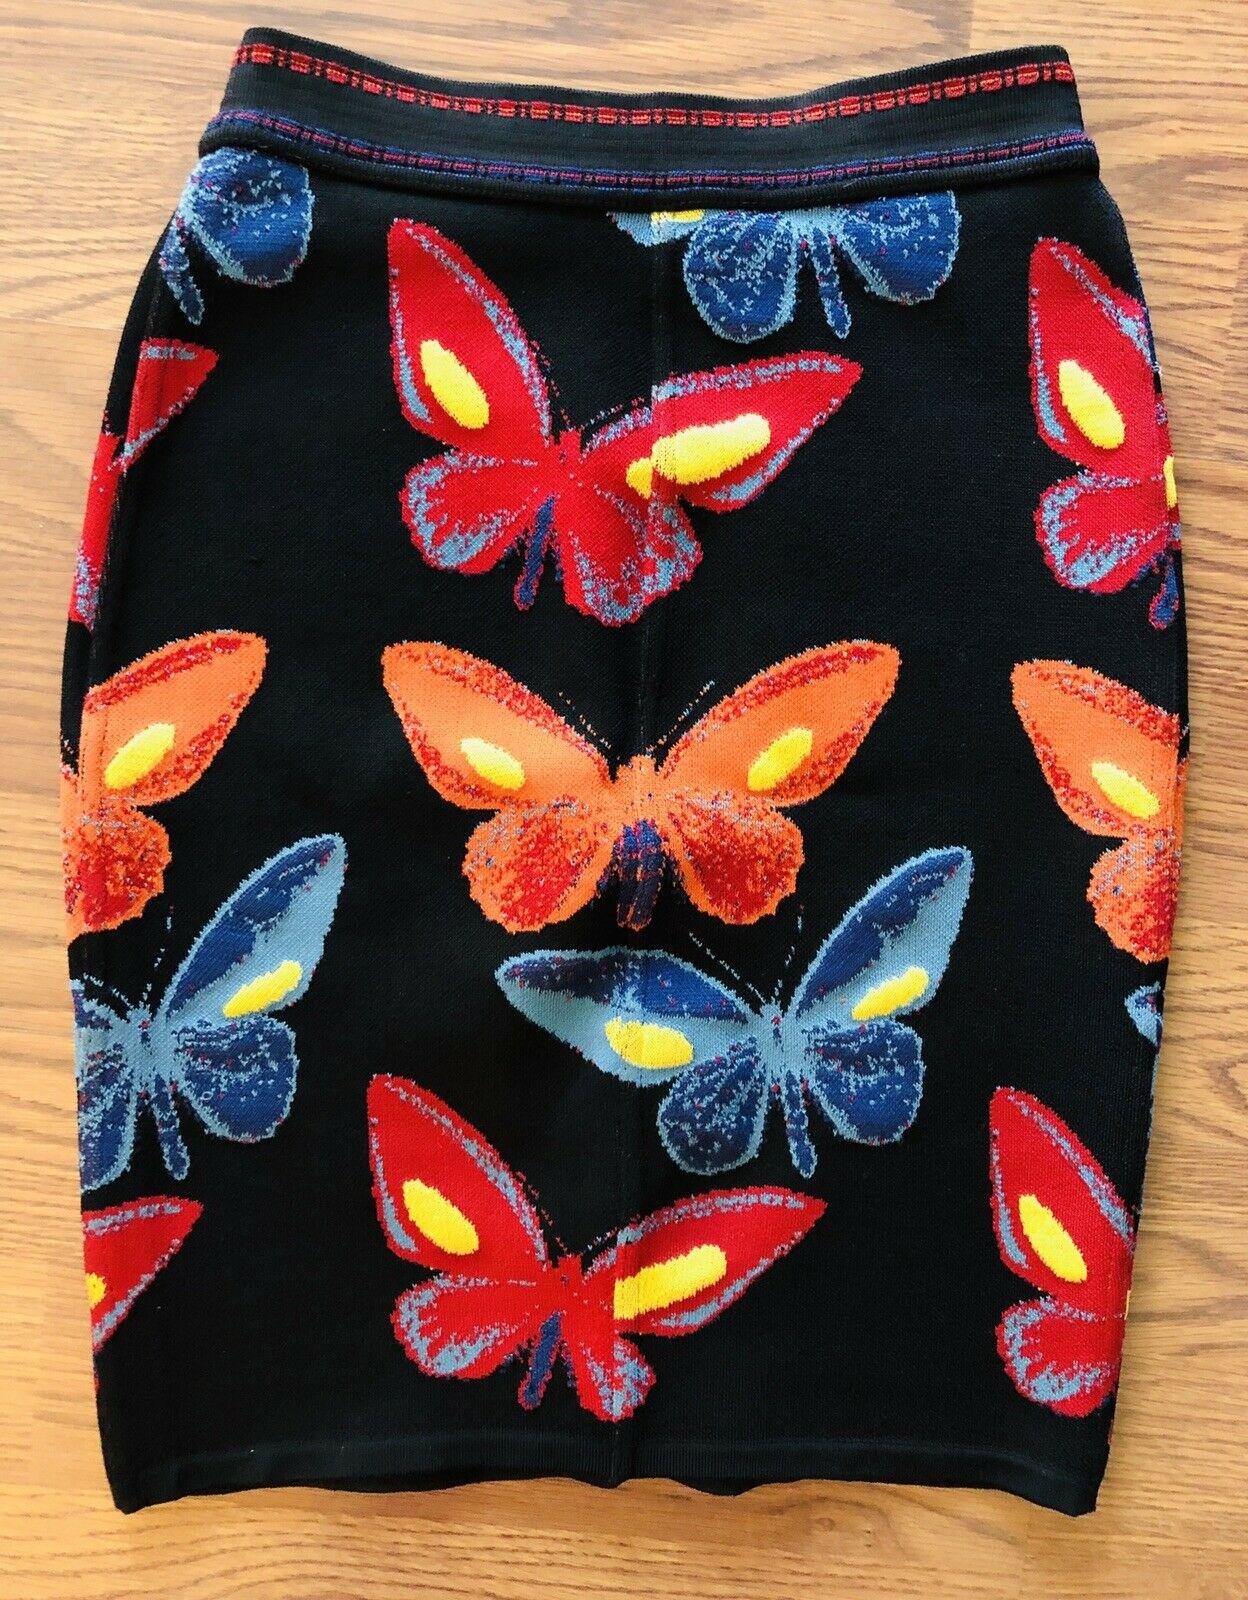 Azzedine Alaia Vintage Butterfly Fitted Skirt XS Iconic Piece !!! Hautement collectable !

Mini-jupe en maille Alaïa avec motif papillon sur toute la longueur et taille élastiquée.

Tous les regards sur Alaïa

Depuis un demi-siècle, les femmes les